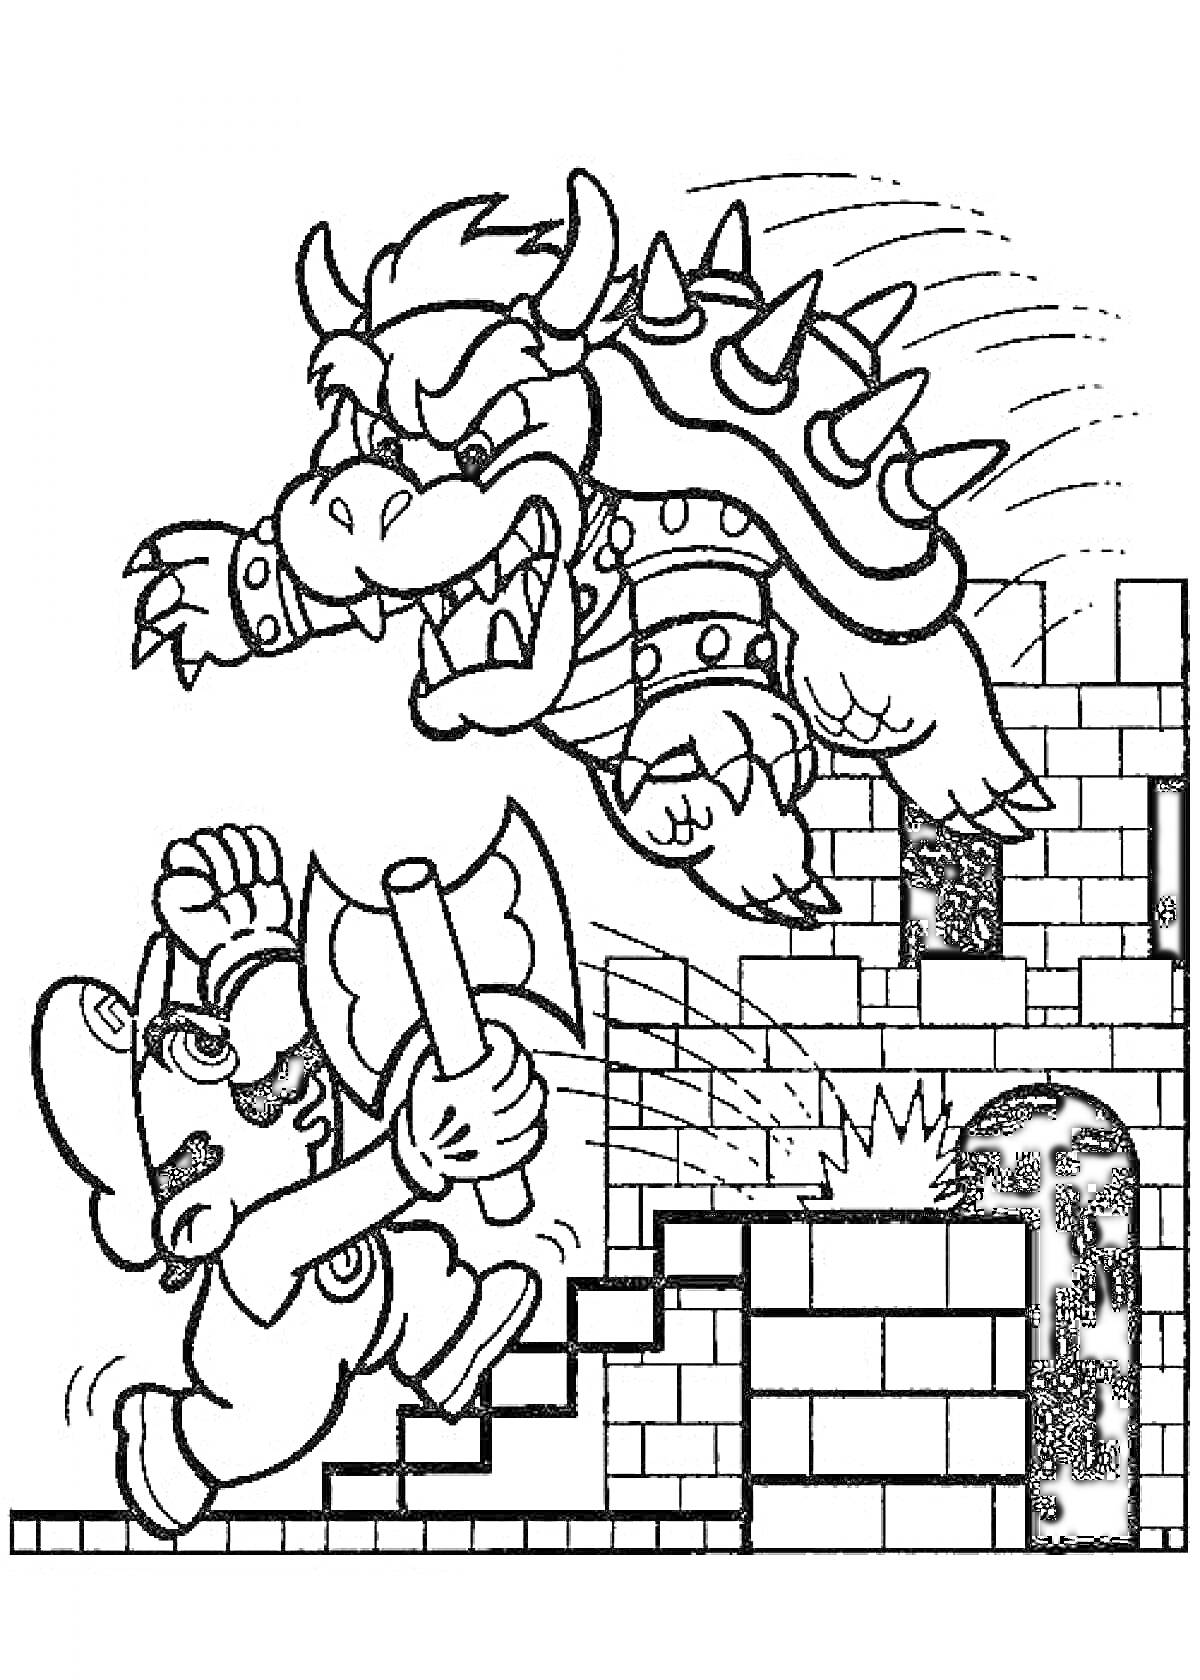 РаскраскаМарио с топором против Боузера на лестнице замка